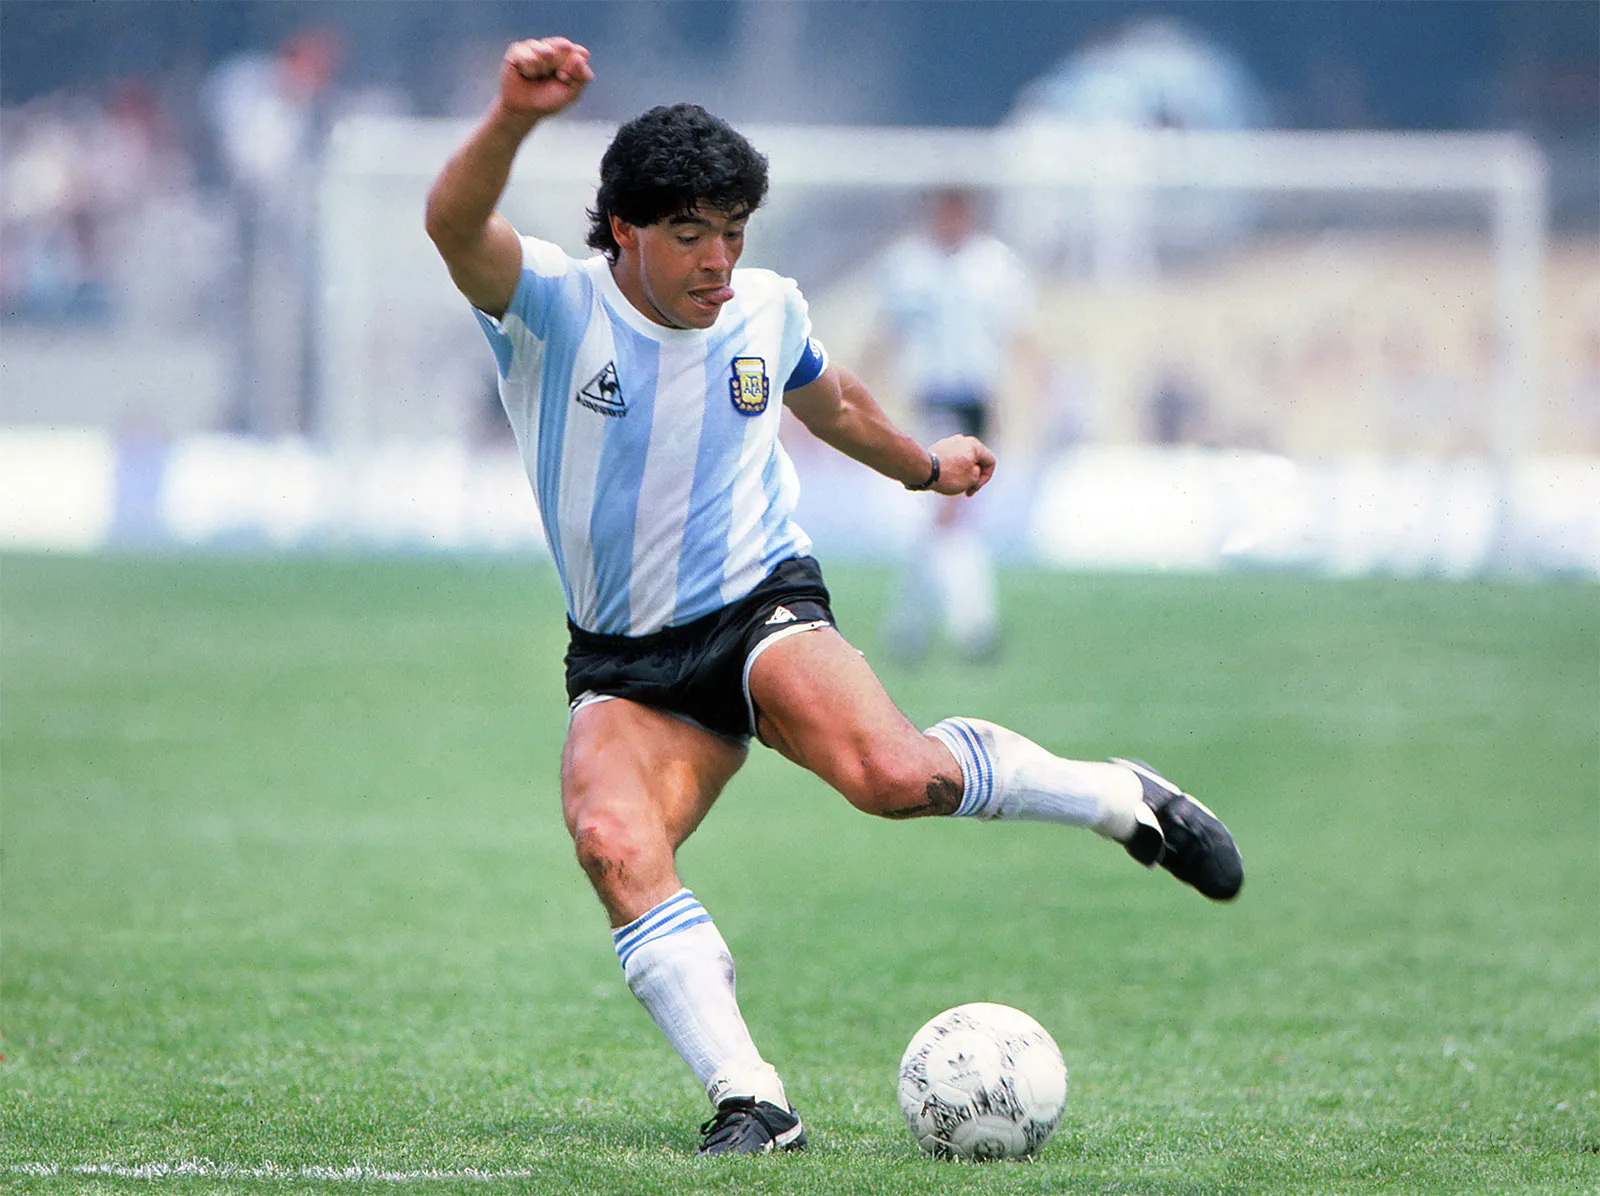 Diego-Maradona-